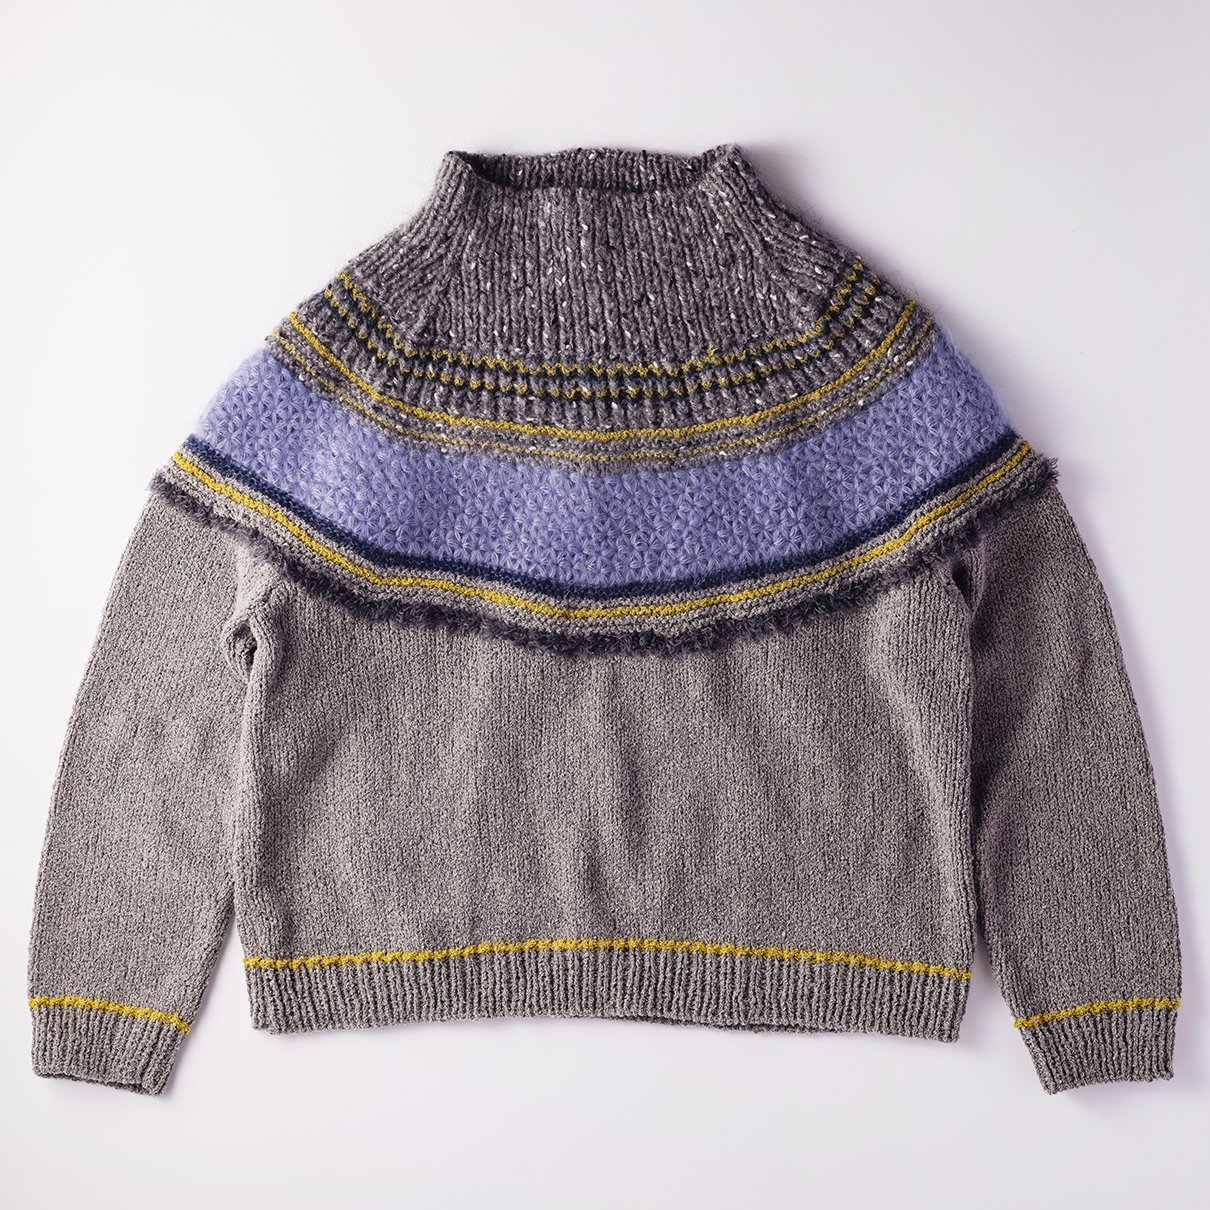 リフ編みヨークのプルオーバー